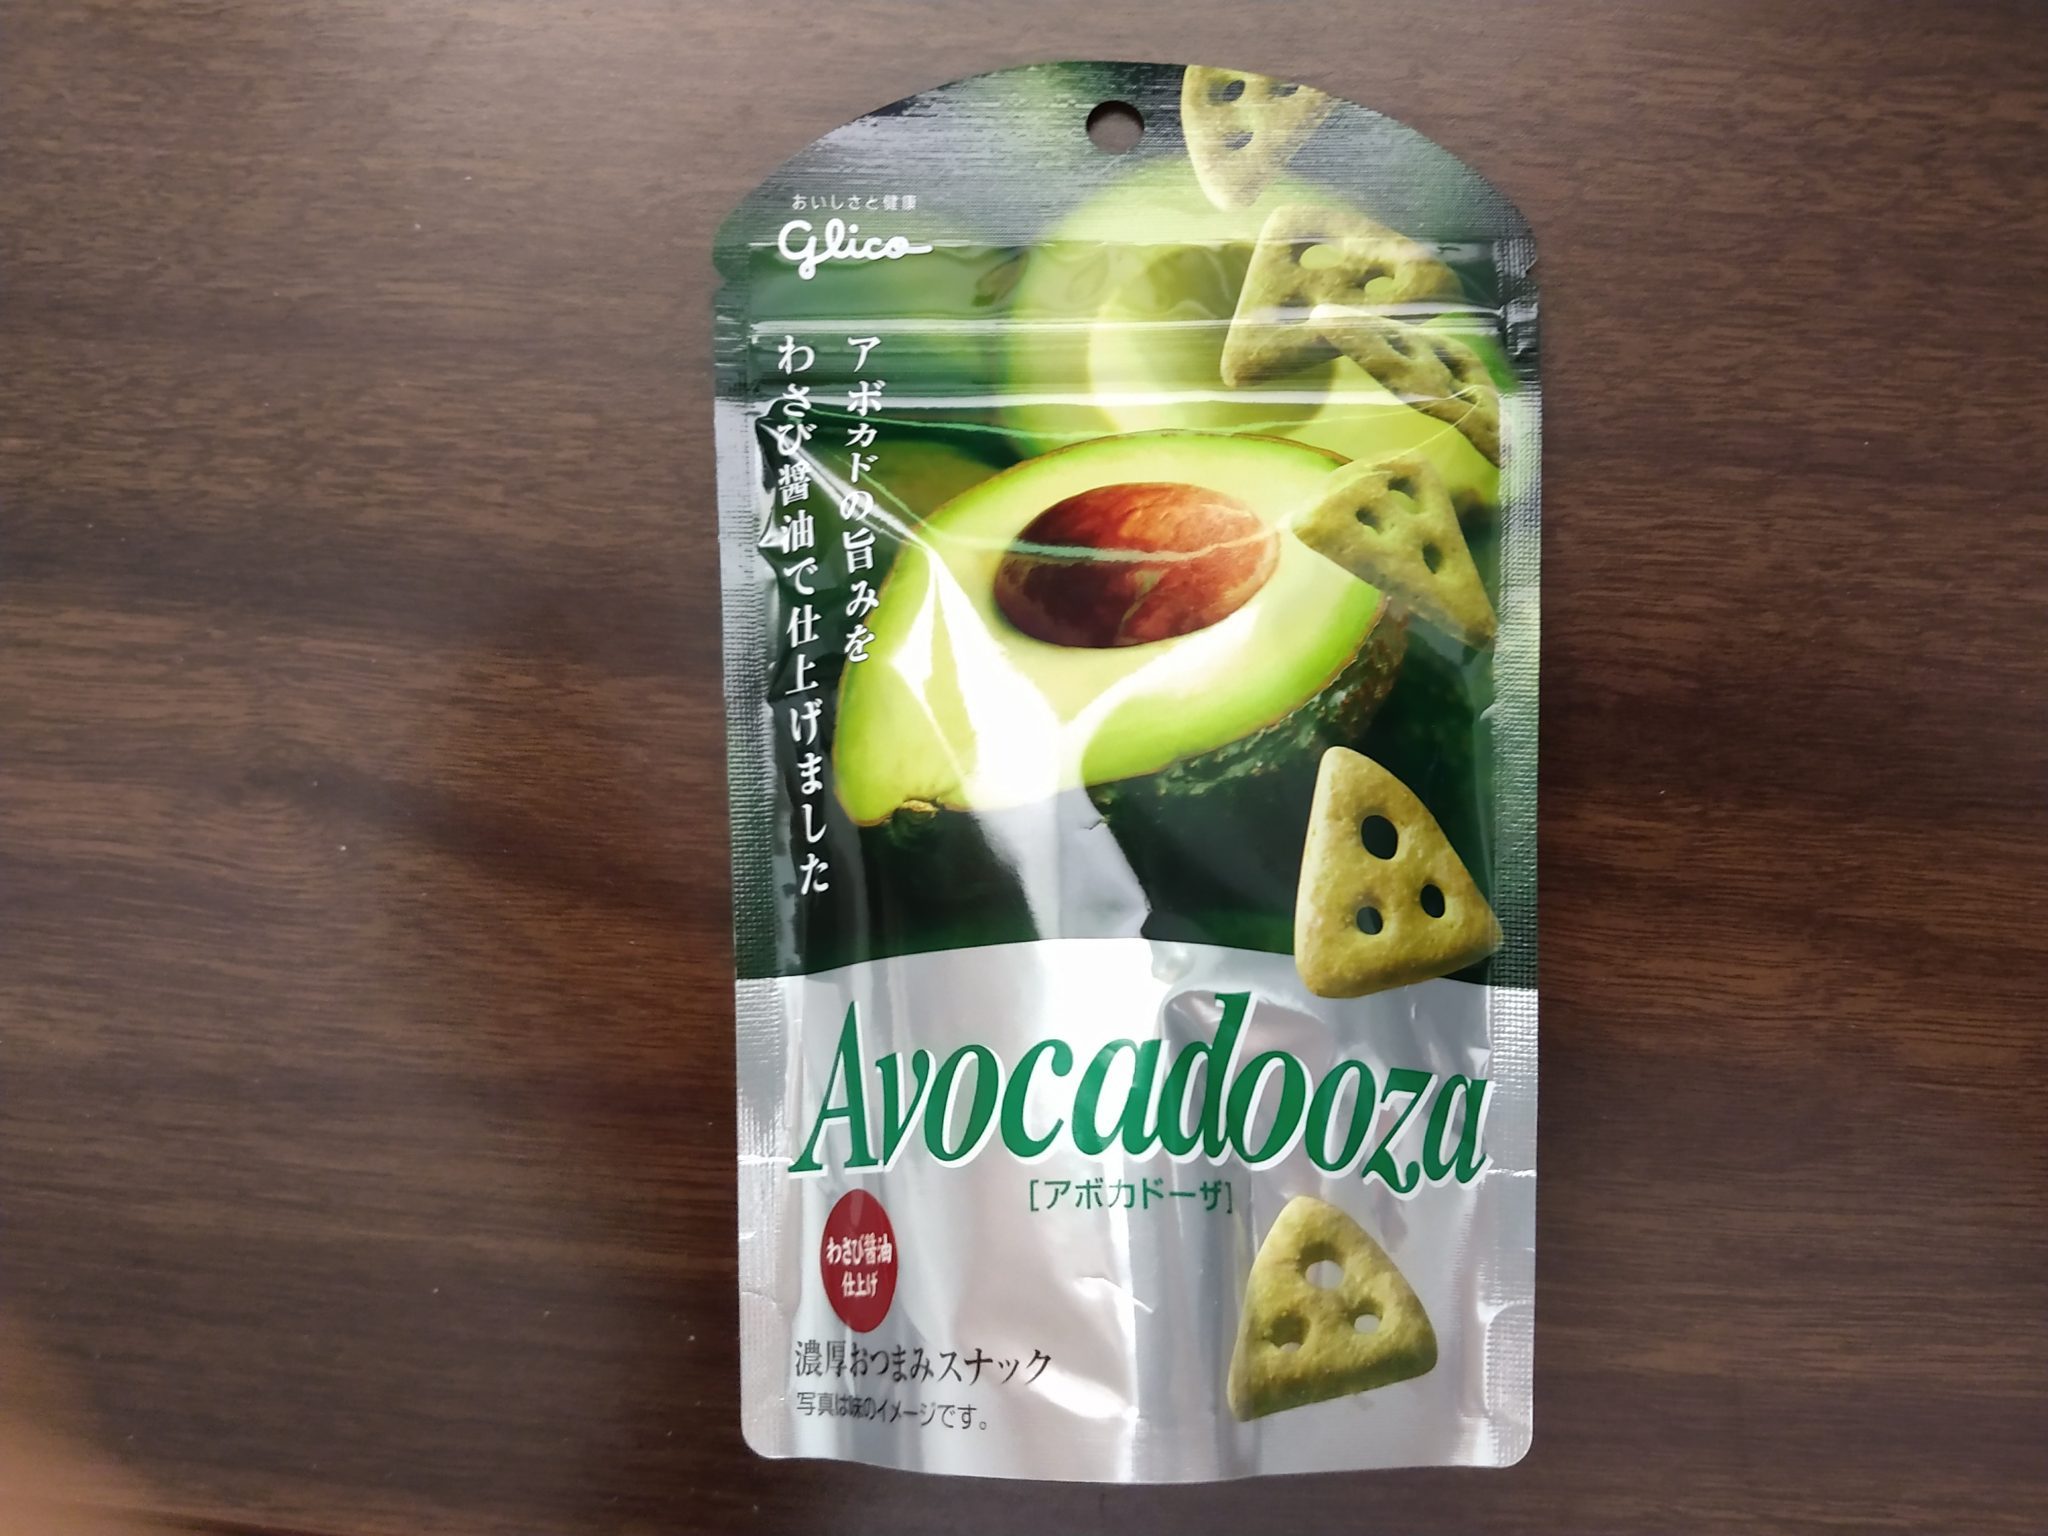 Avocadooza